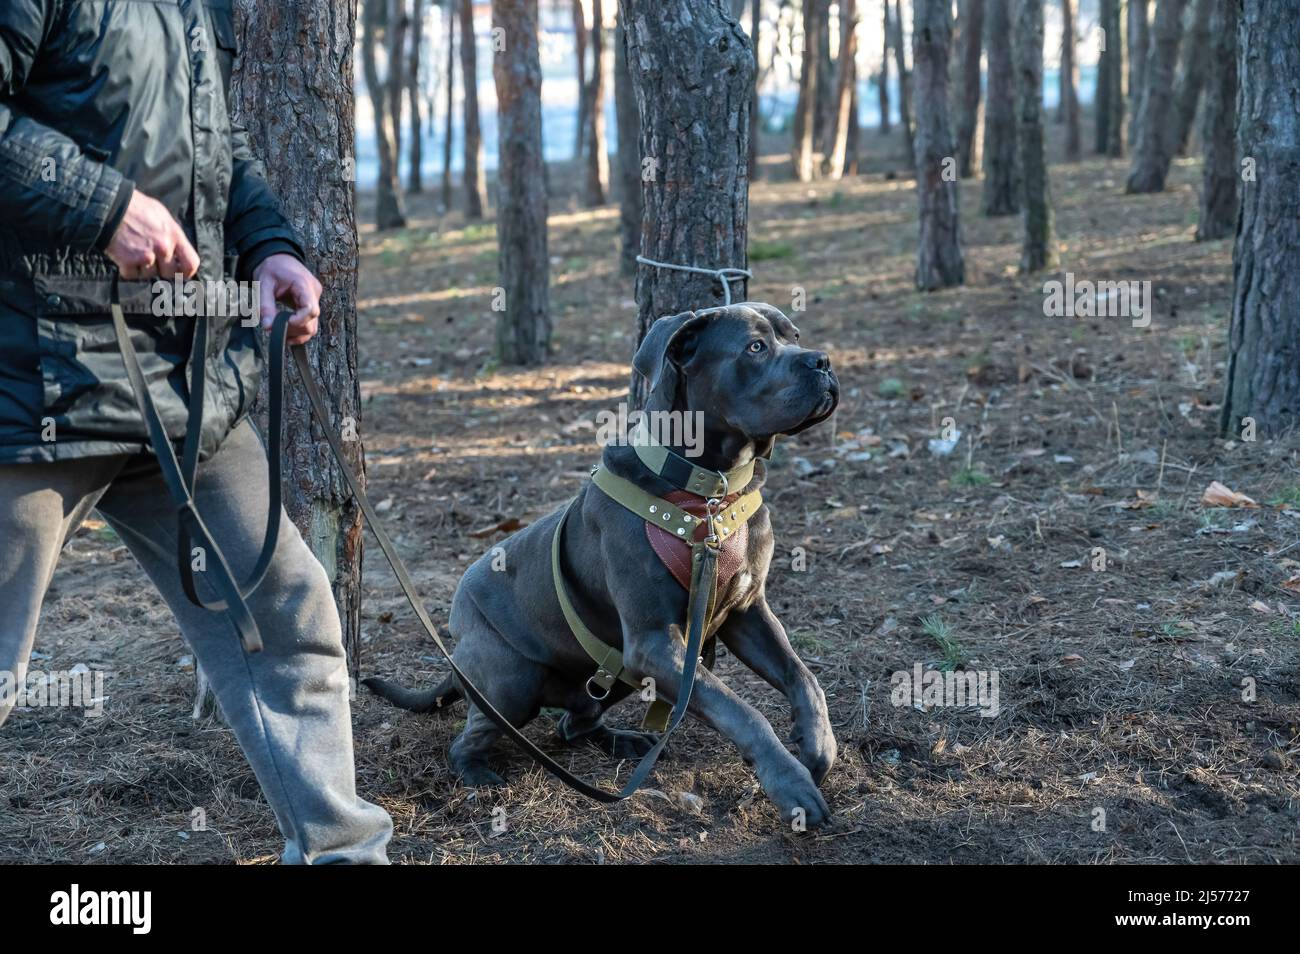 K9 formazione. Un cane maschio cane cane corso siede accanto al suo proprietario. L'animale domestico è legato ad un tronco dell'albero. I suoi occhi sono sull'allenatore che si avvicina. Foto Stock